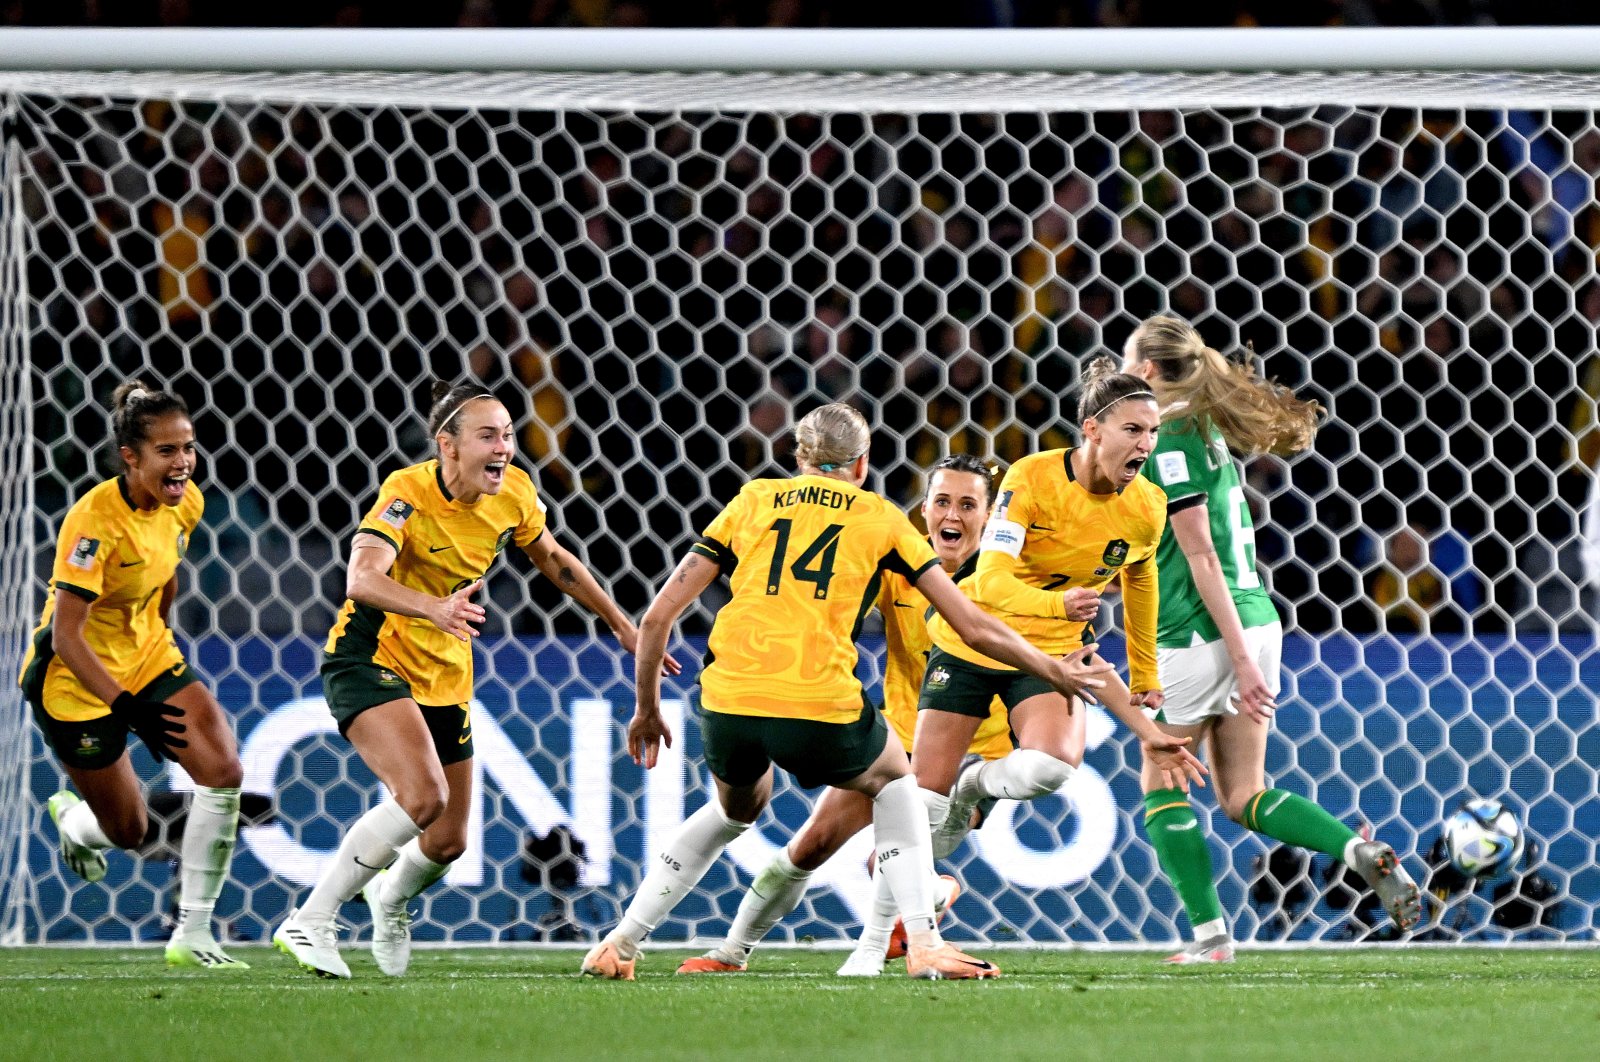 Piala Dunia Wanita bergemuruh saat tuan rumah menang di tengah tragedi Auckland